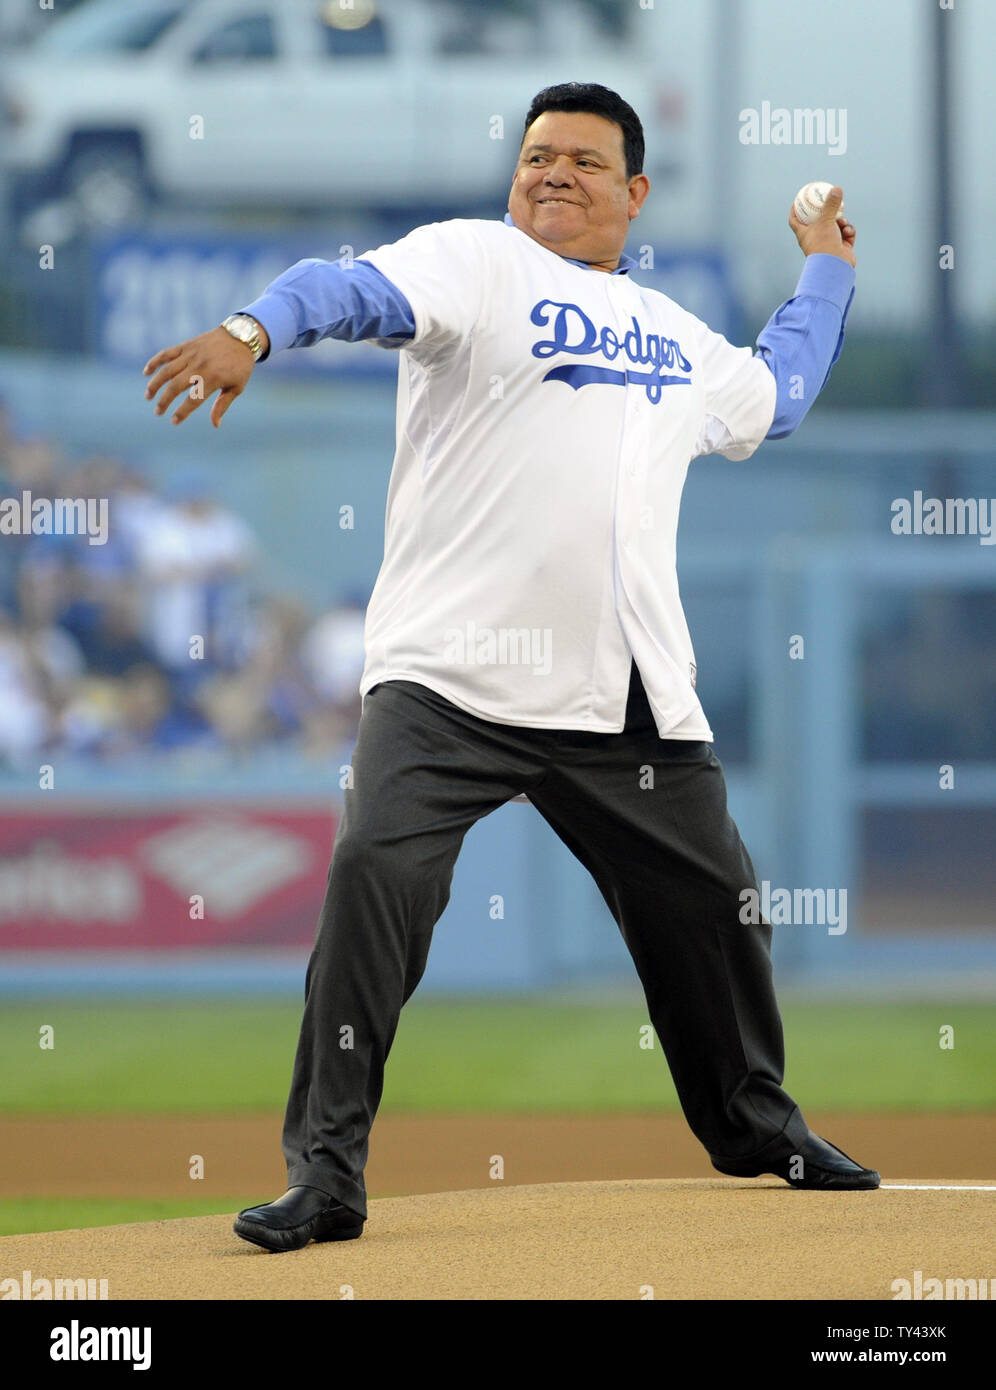 Dodgers interview: Fernando Valenzuela reflects on career before Legends of  Dodger Baseball ceremony 